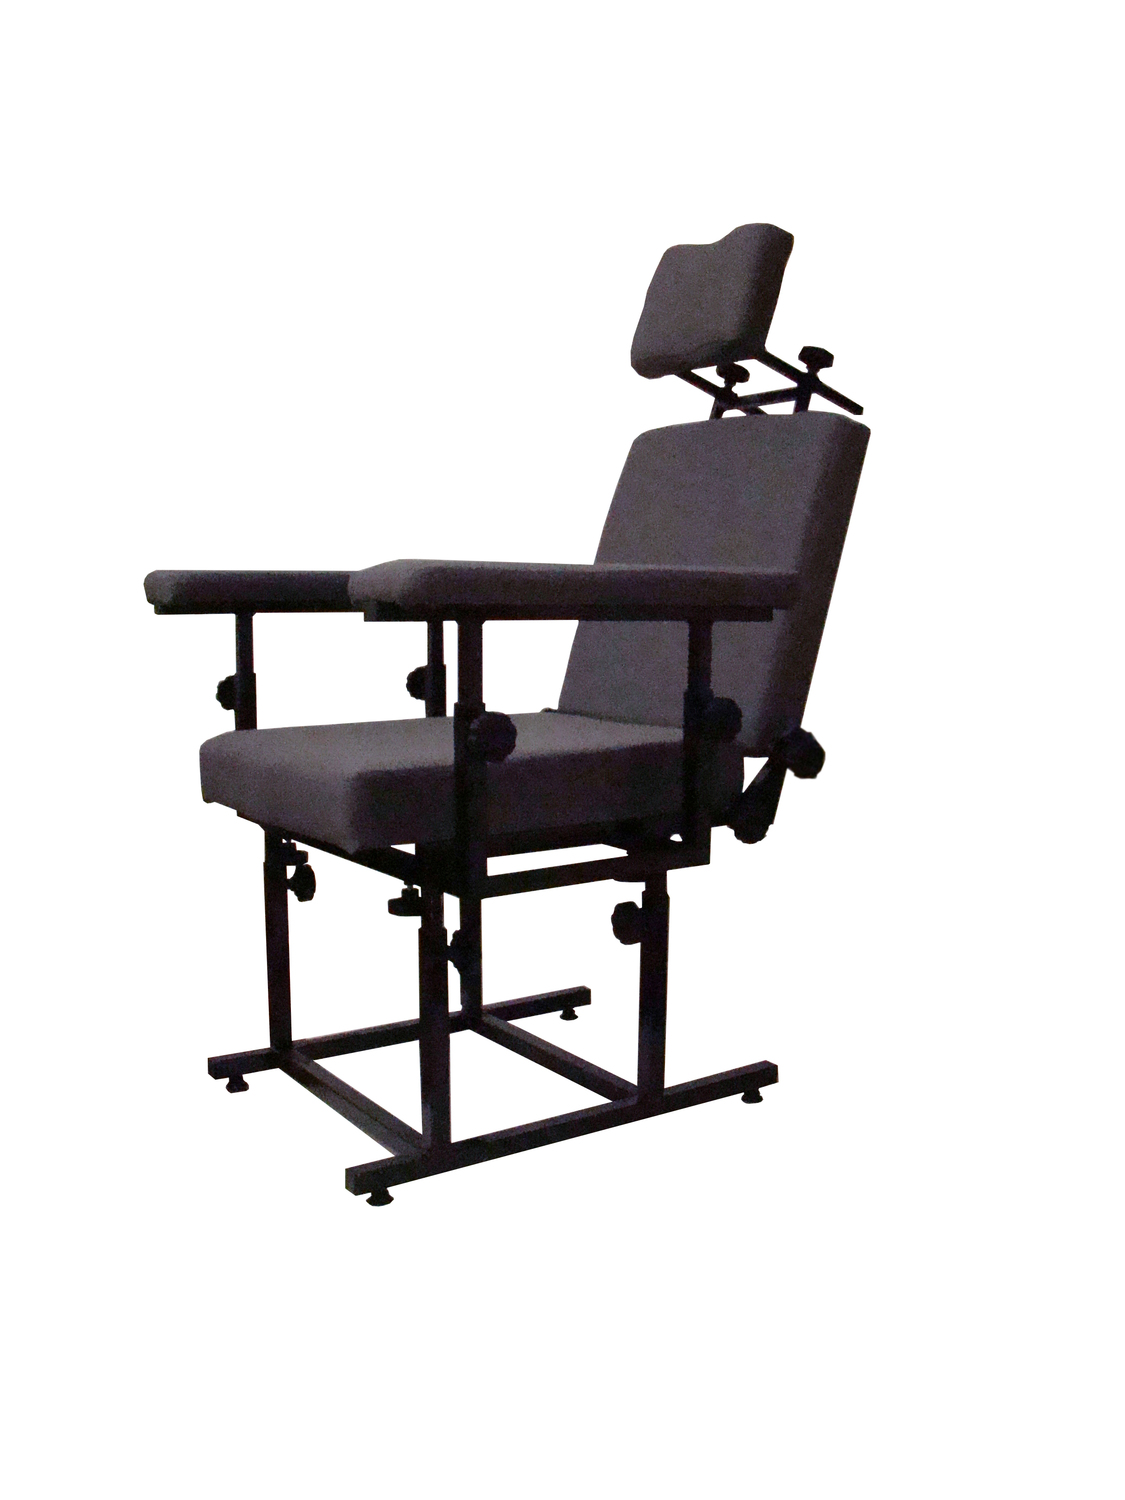 <span style="font-weight: bold;">Специализированное эргономическое кресло для тестируемого в рамках психофизиологических исследований с применением полиграфа «ПОЛИСКОР-XXI ВЕК».&nbsp;</span>